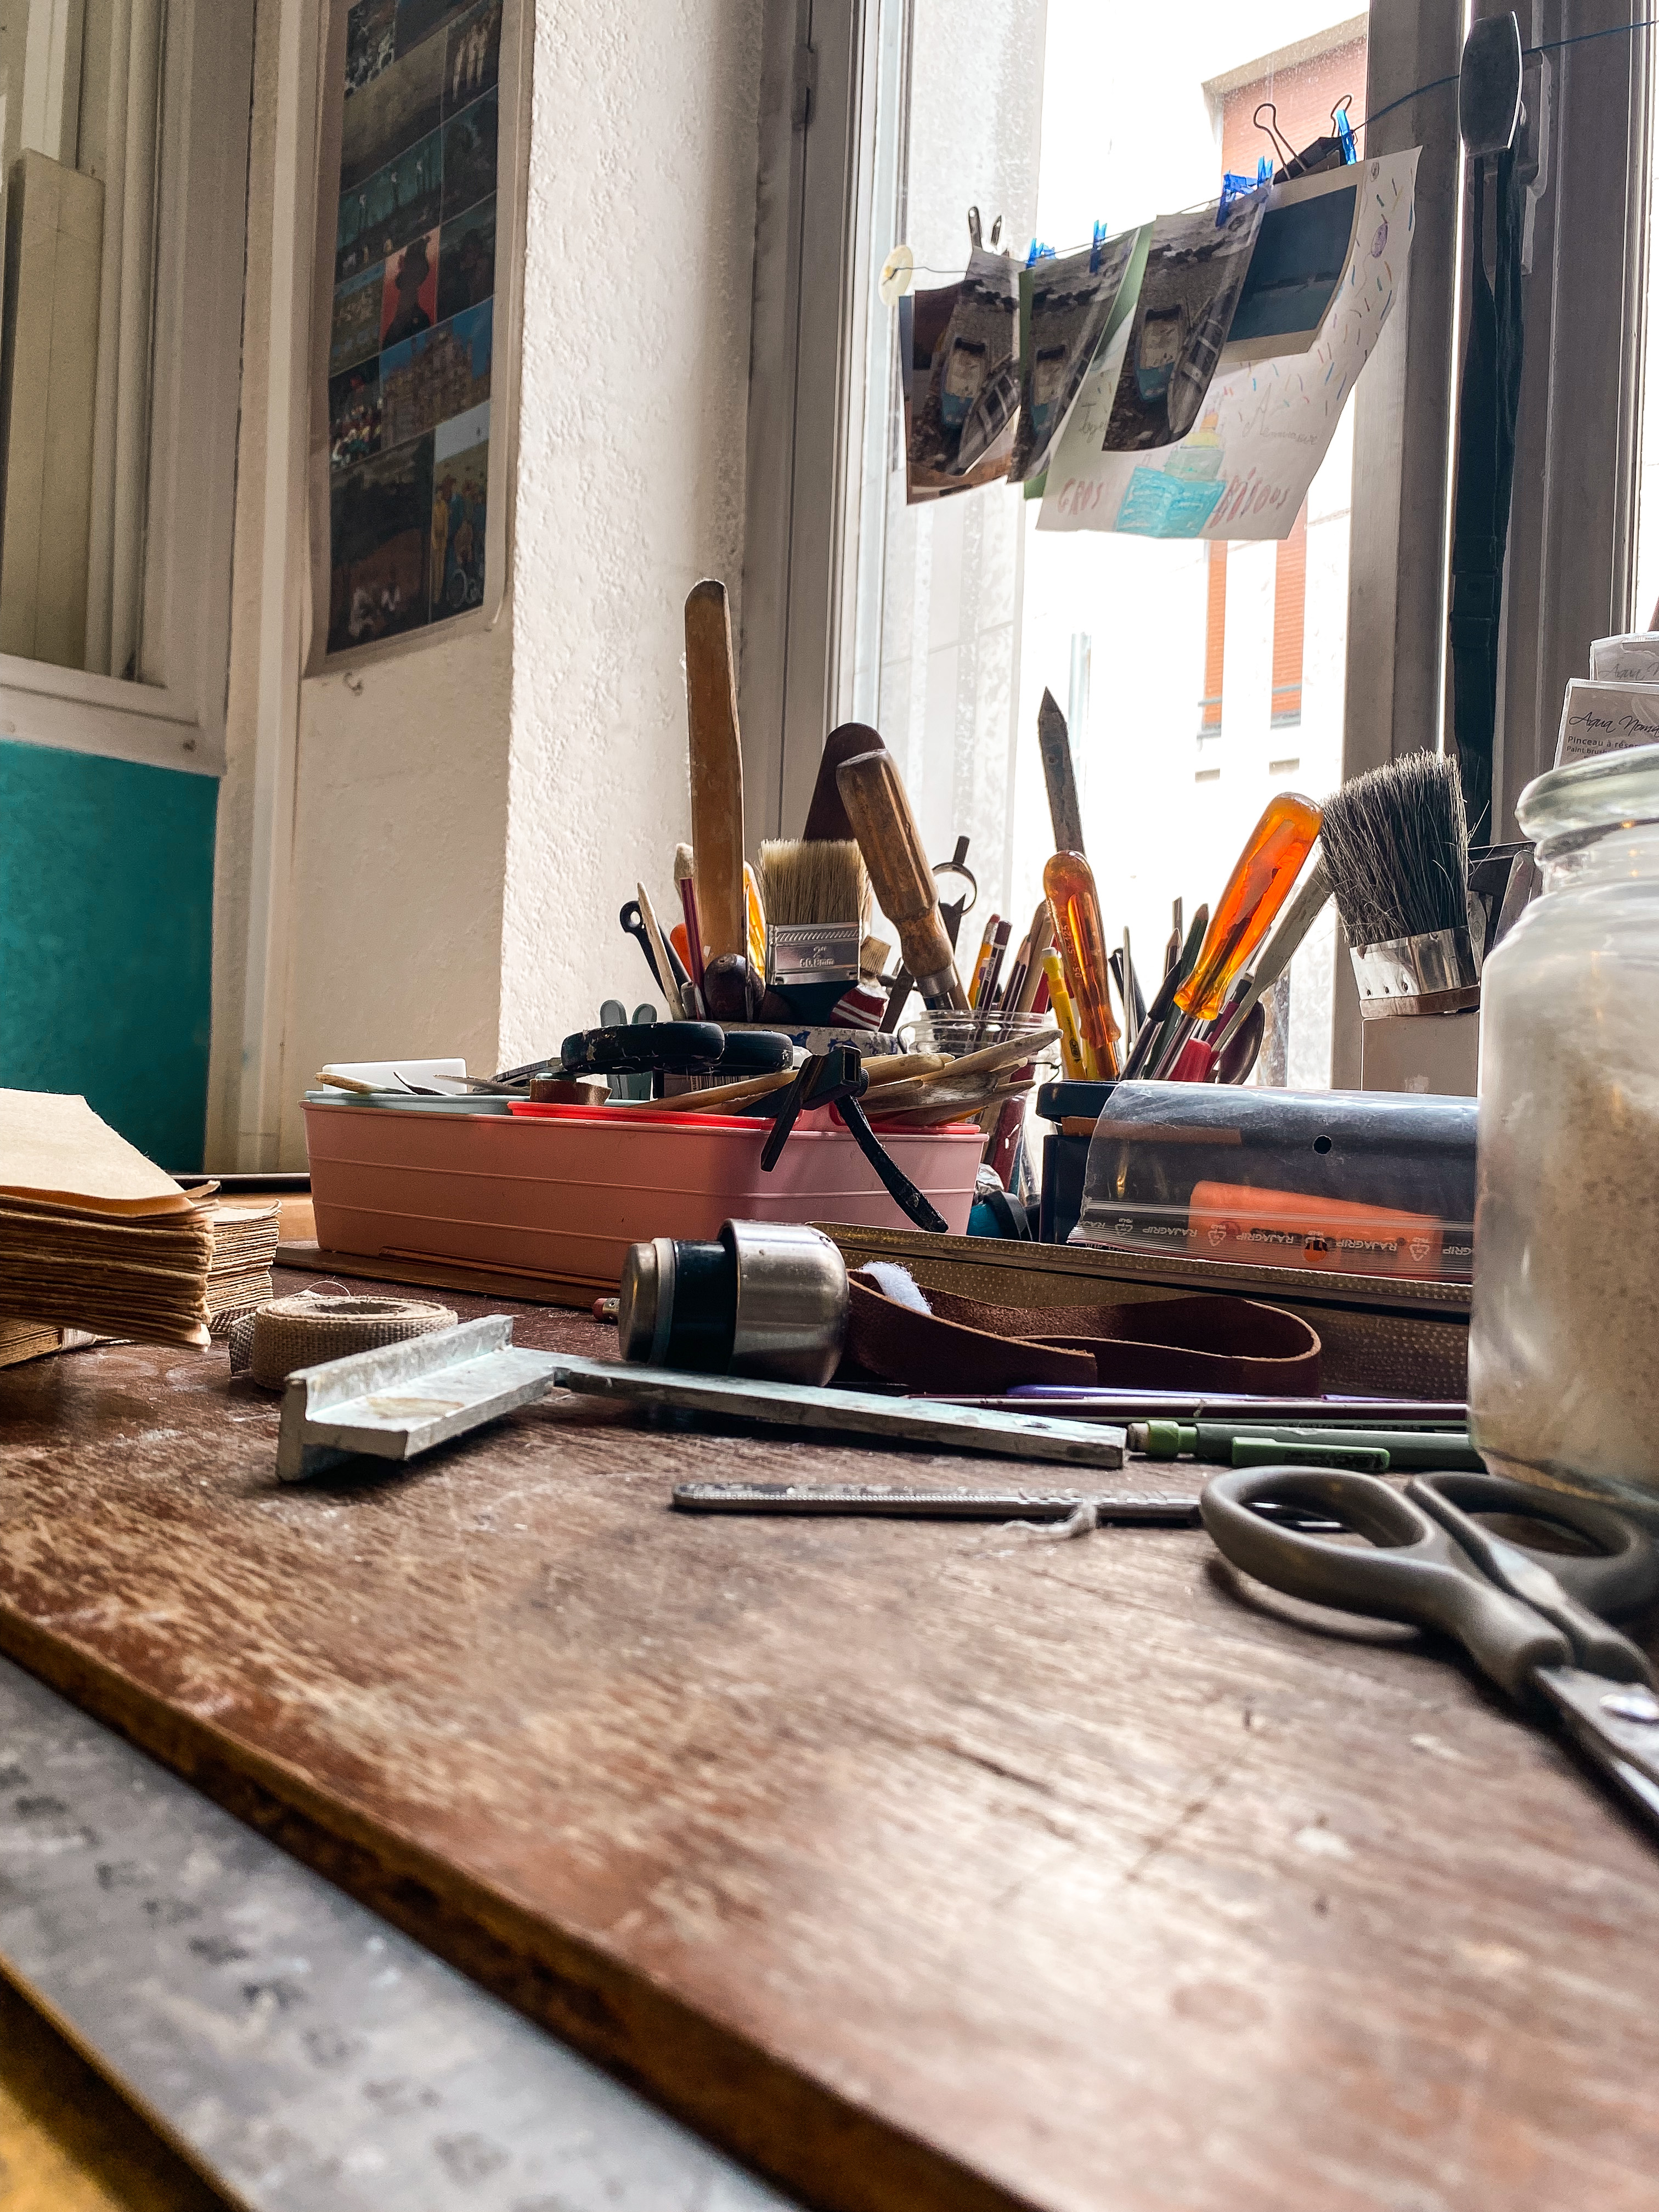 Atelier de reliure : Un bureau en bois sur lequel sont éparpillés différents types d'outils ; au fond, deux pots contenant l'un des pinceaux, l'autre crayons et tournevis. Derrière on voit une fenêtre avec des images accrochées sur un fil.